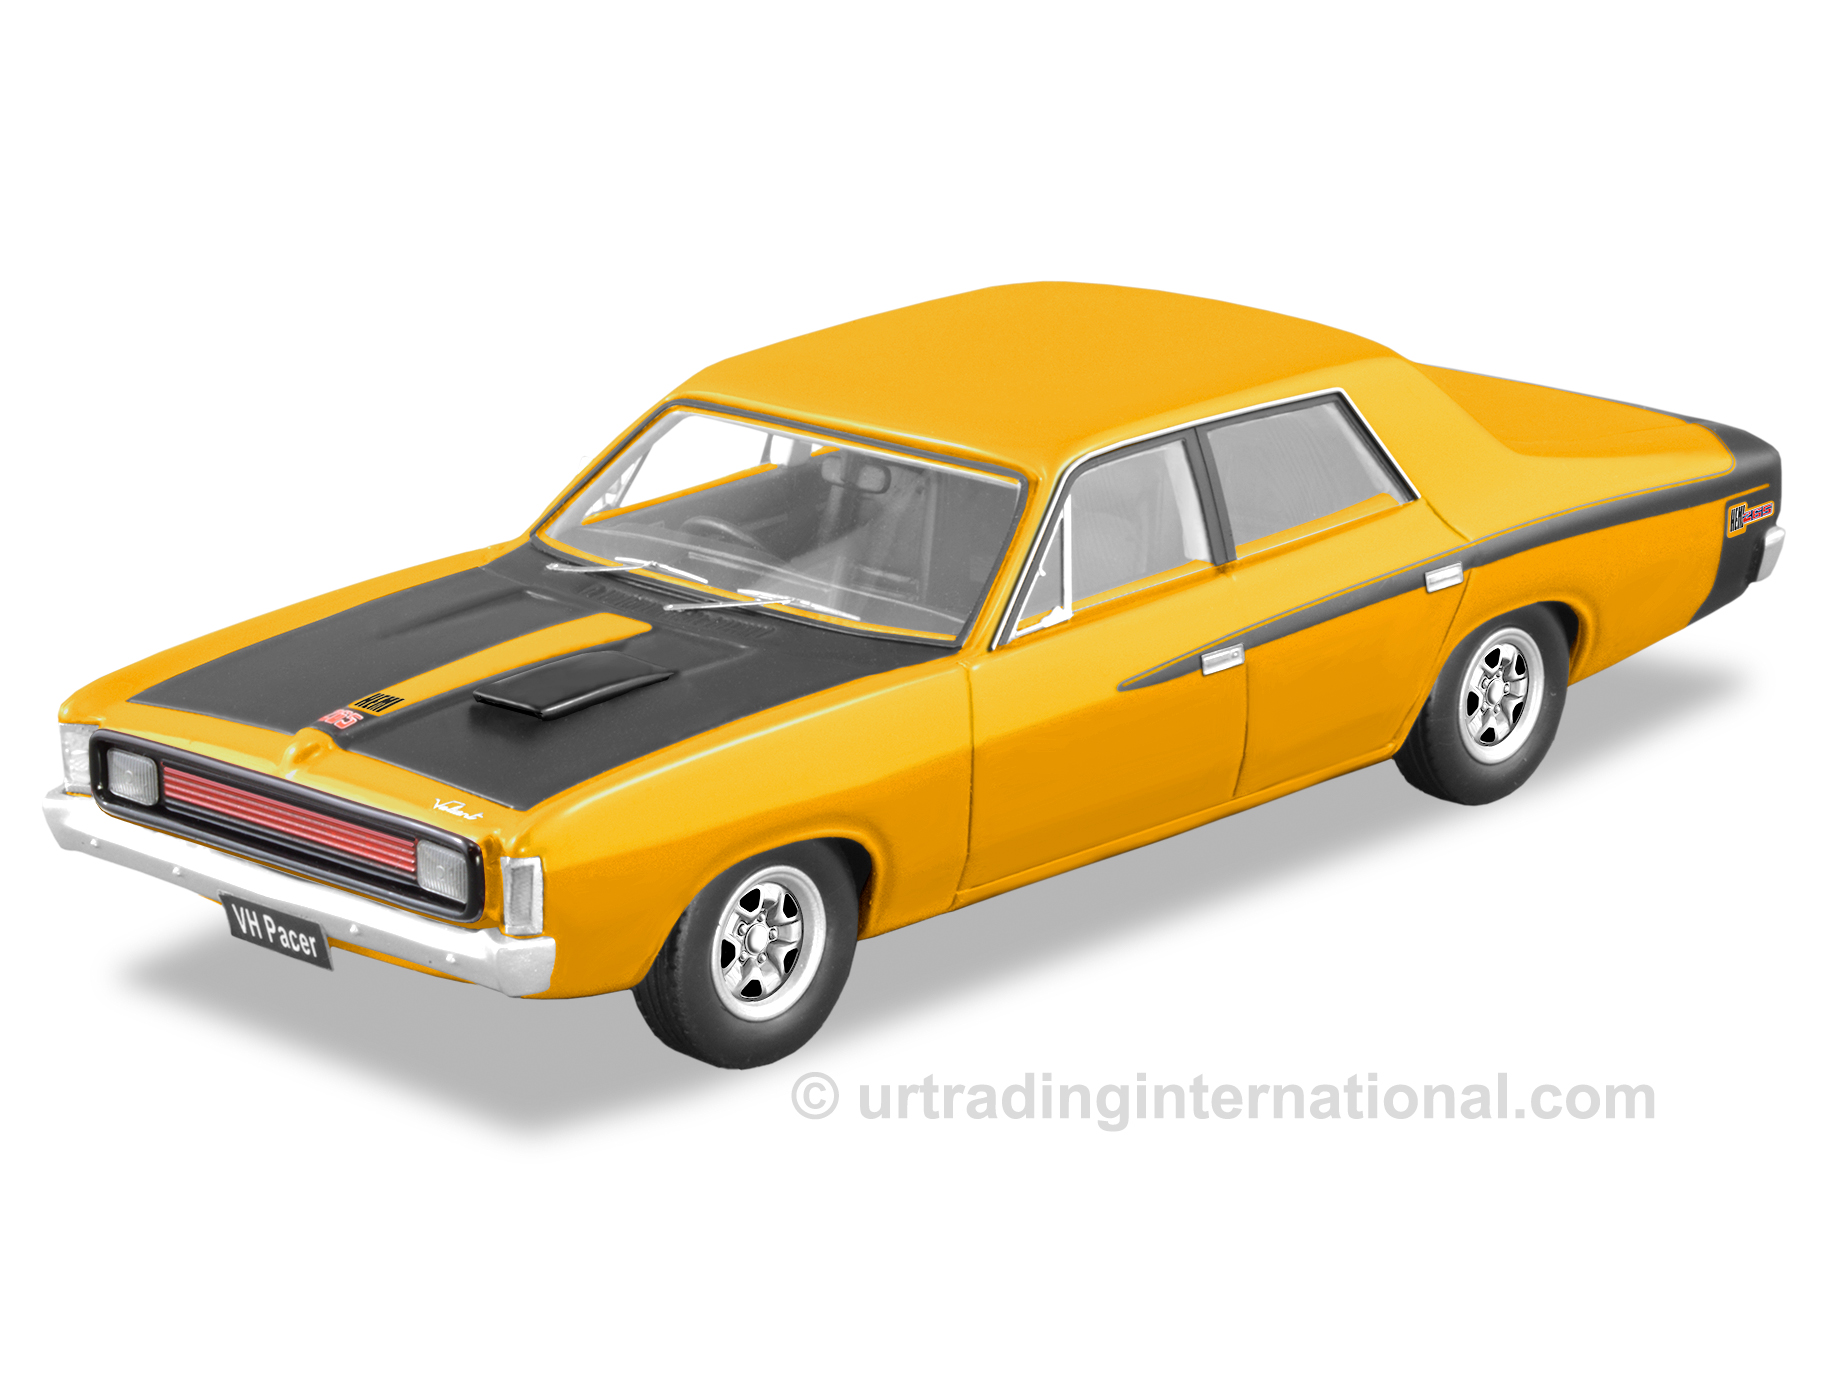 1972 VH Valiant Pacer – Hot Mustard